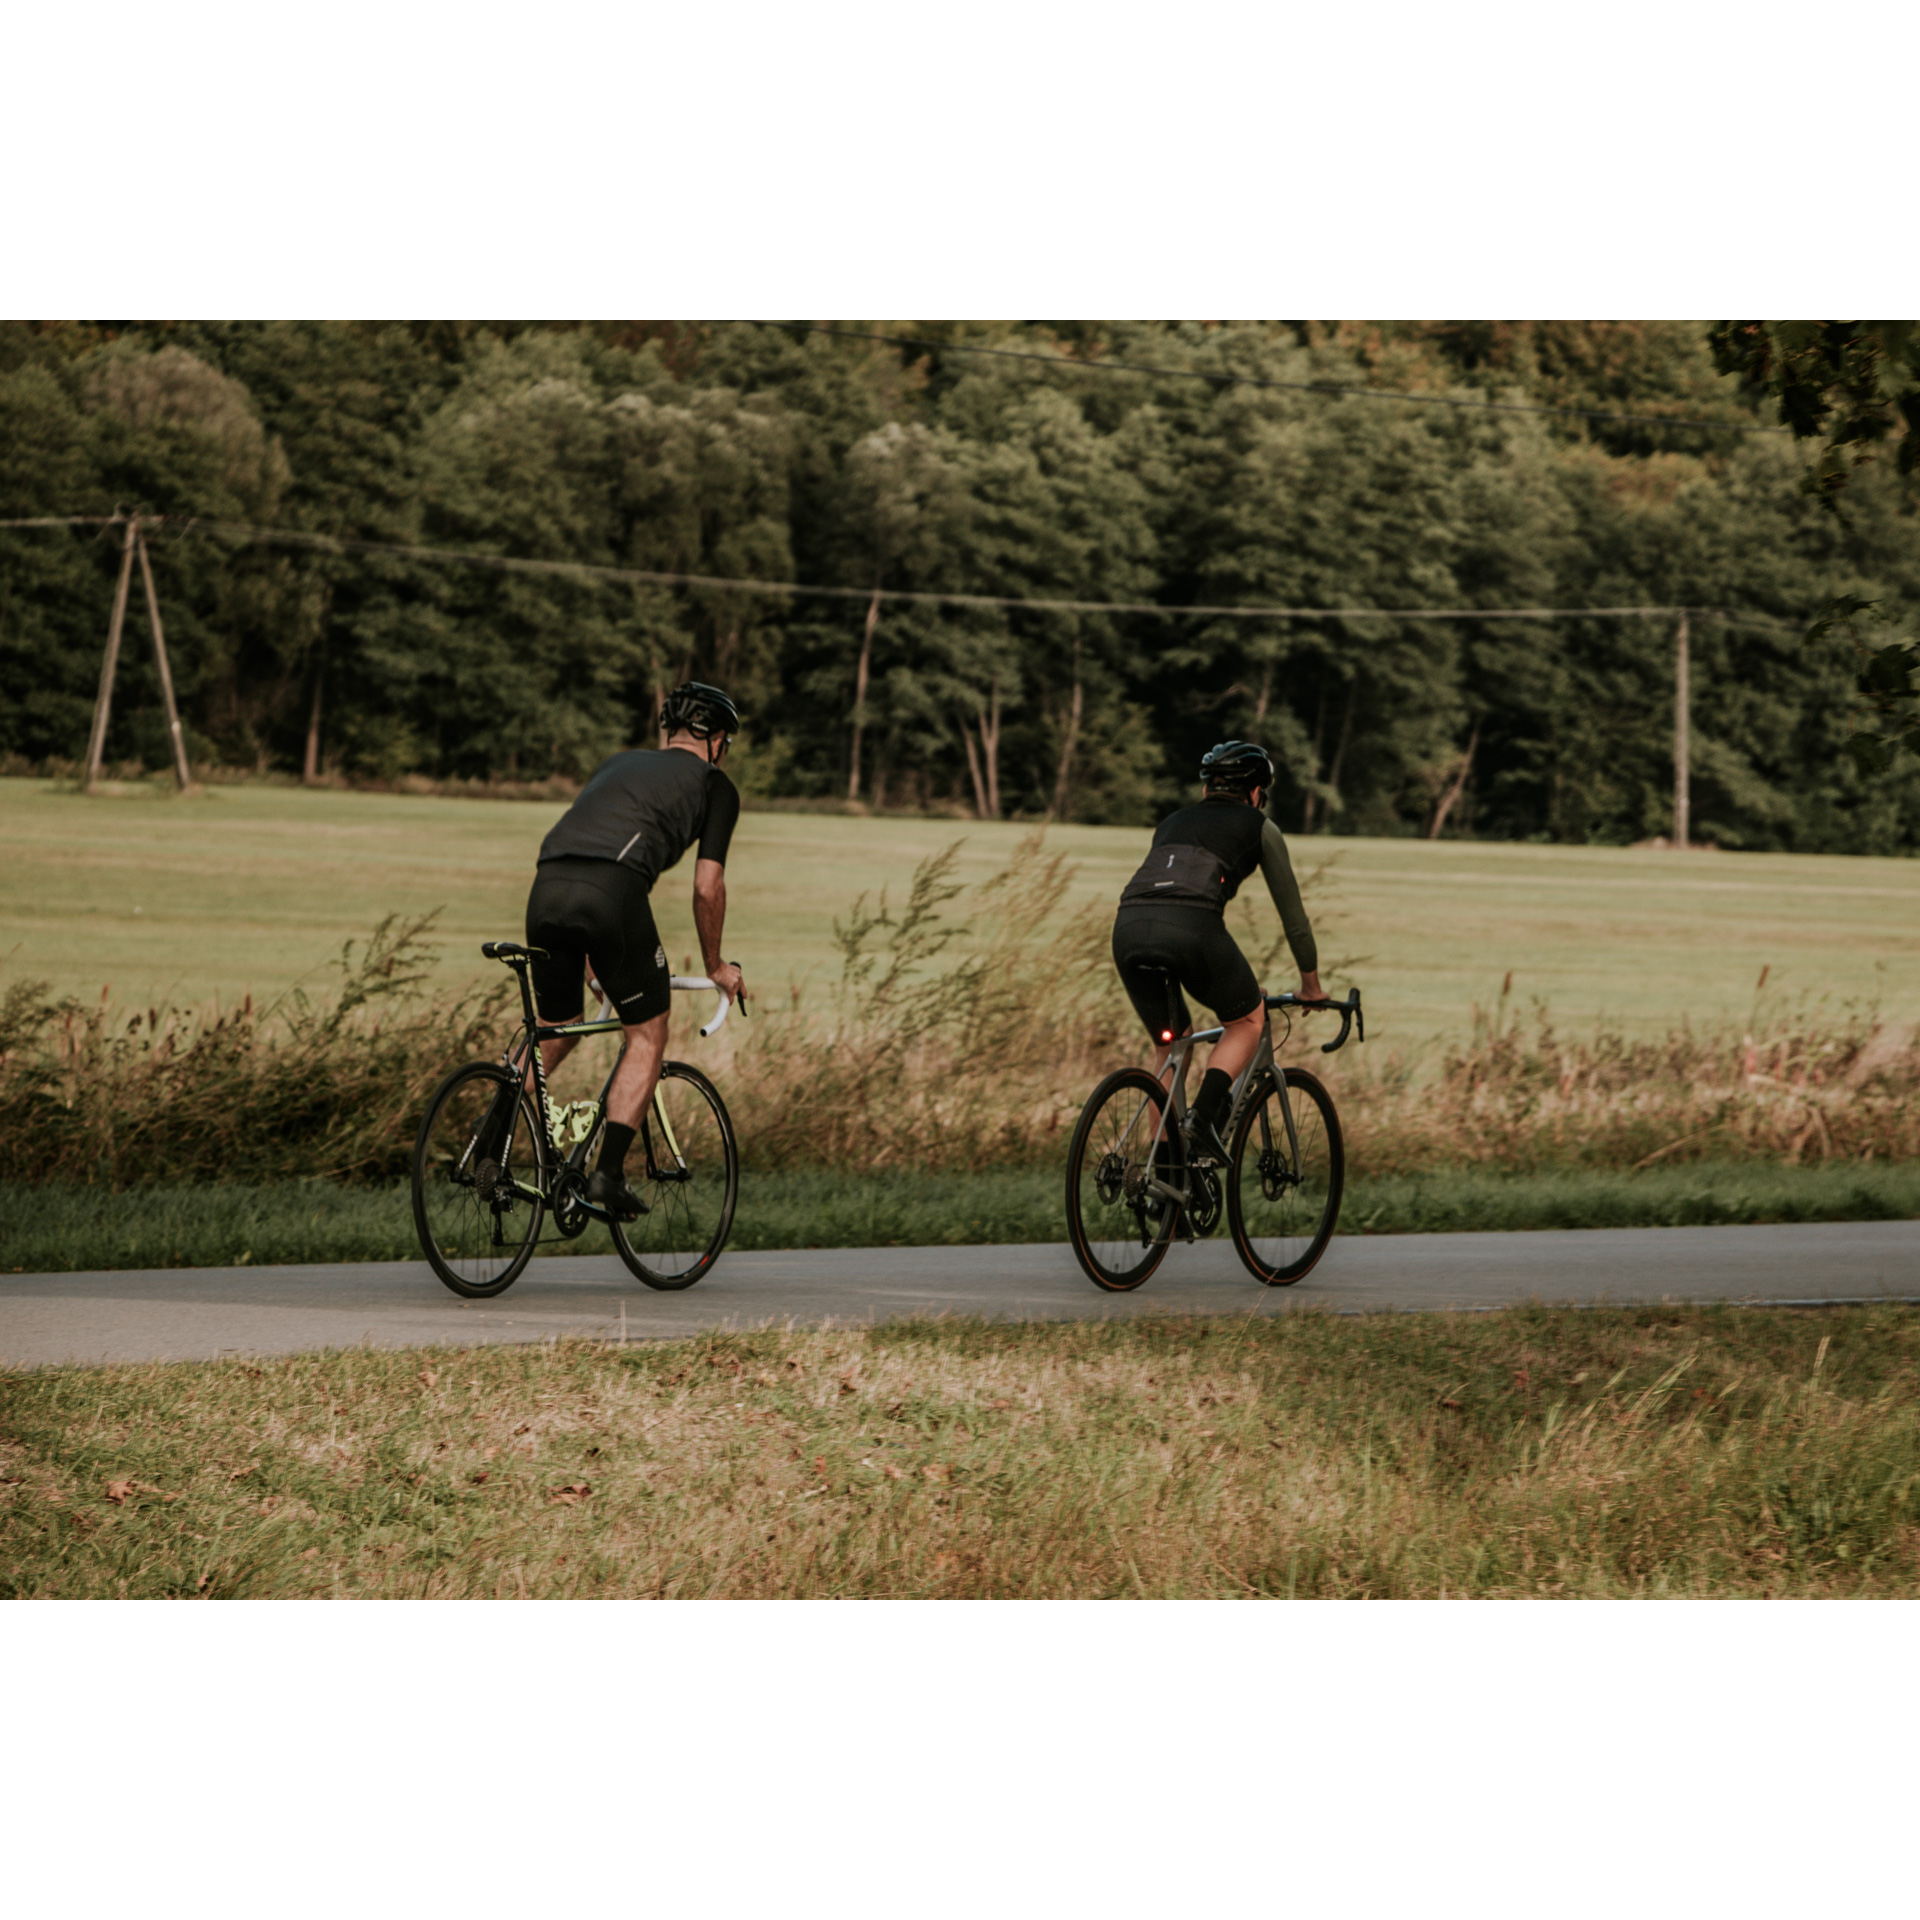 Dwóch rowerzystów w czarnych strojach kolarskich i kaskach jadących po asfaltowej drodze biegnącej między zielonymi łąkami, w tle zielone drzewa